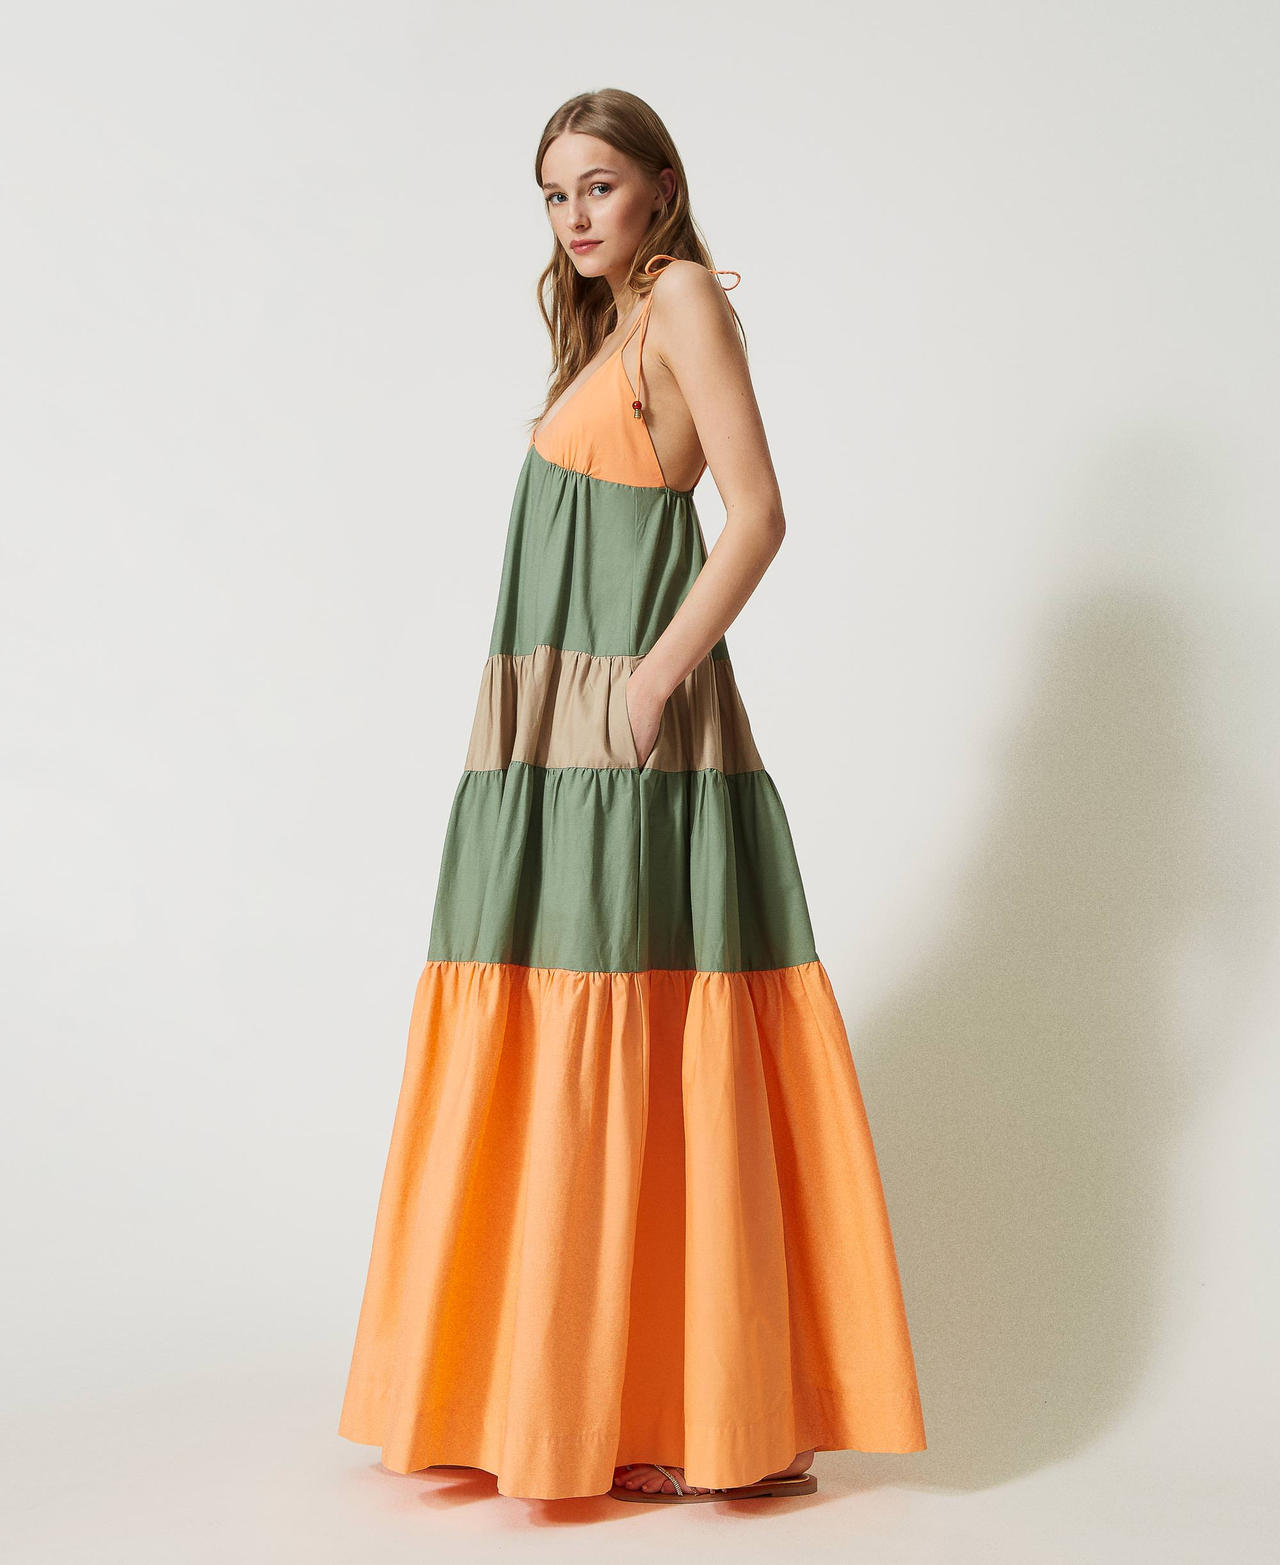 Robe longue avec volants bicolores Multicolore Orange « Cantaloup »/Vert « Turtle Green »/Beige « Carabbean » Femme 231LM2HBB-02